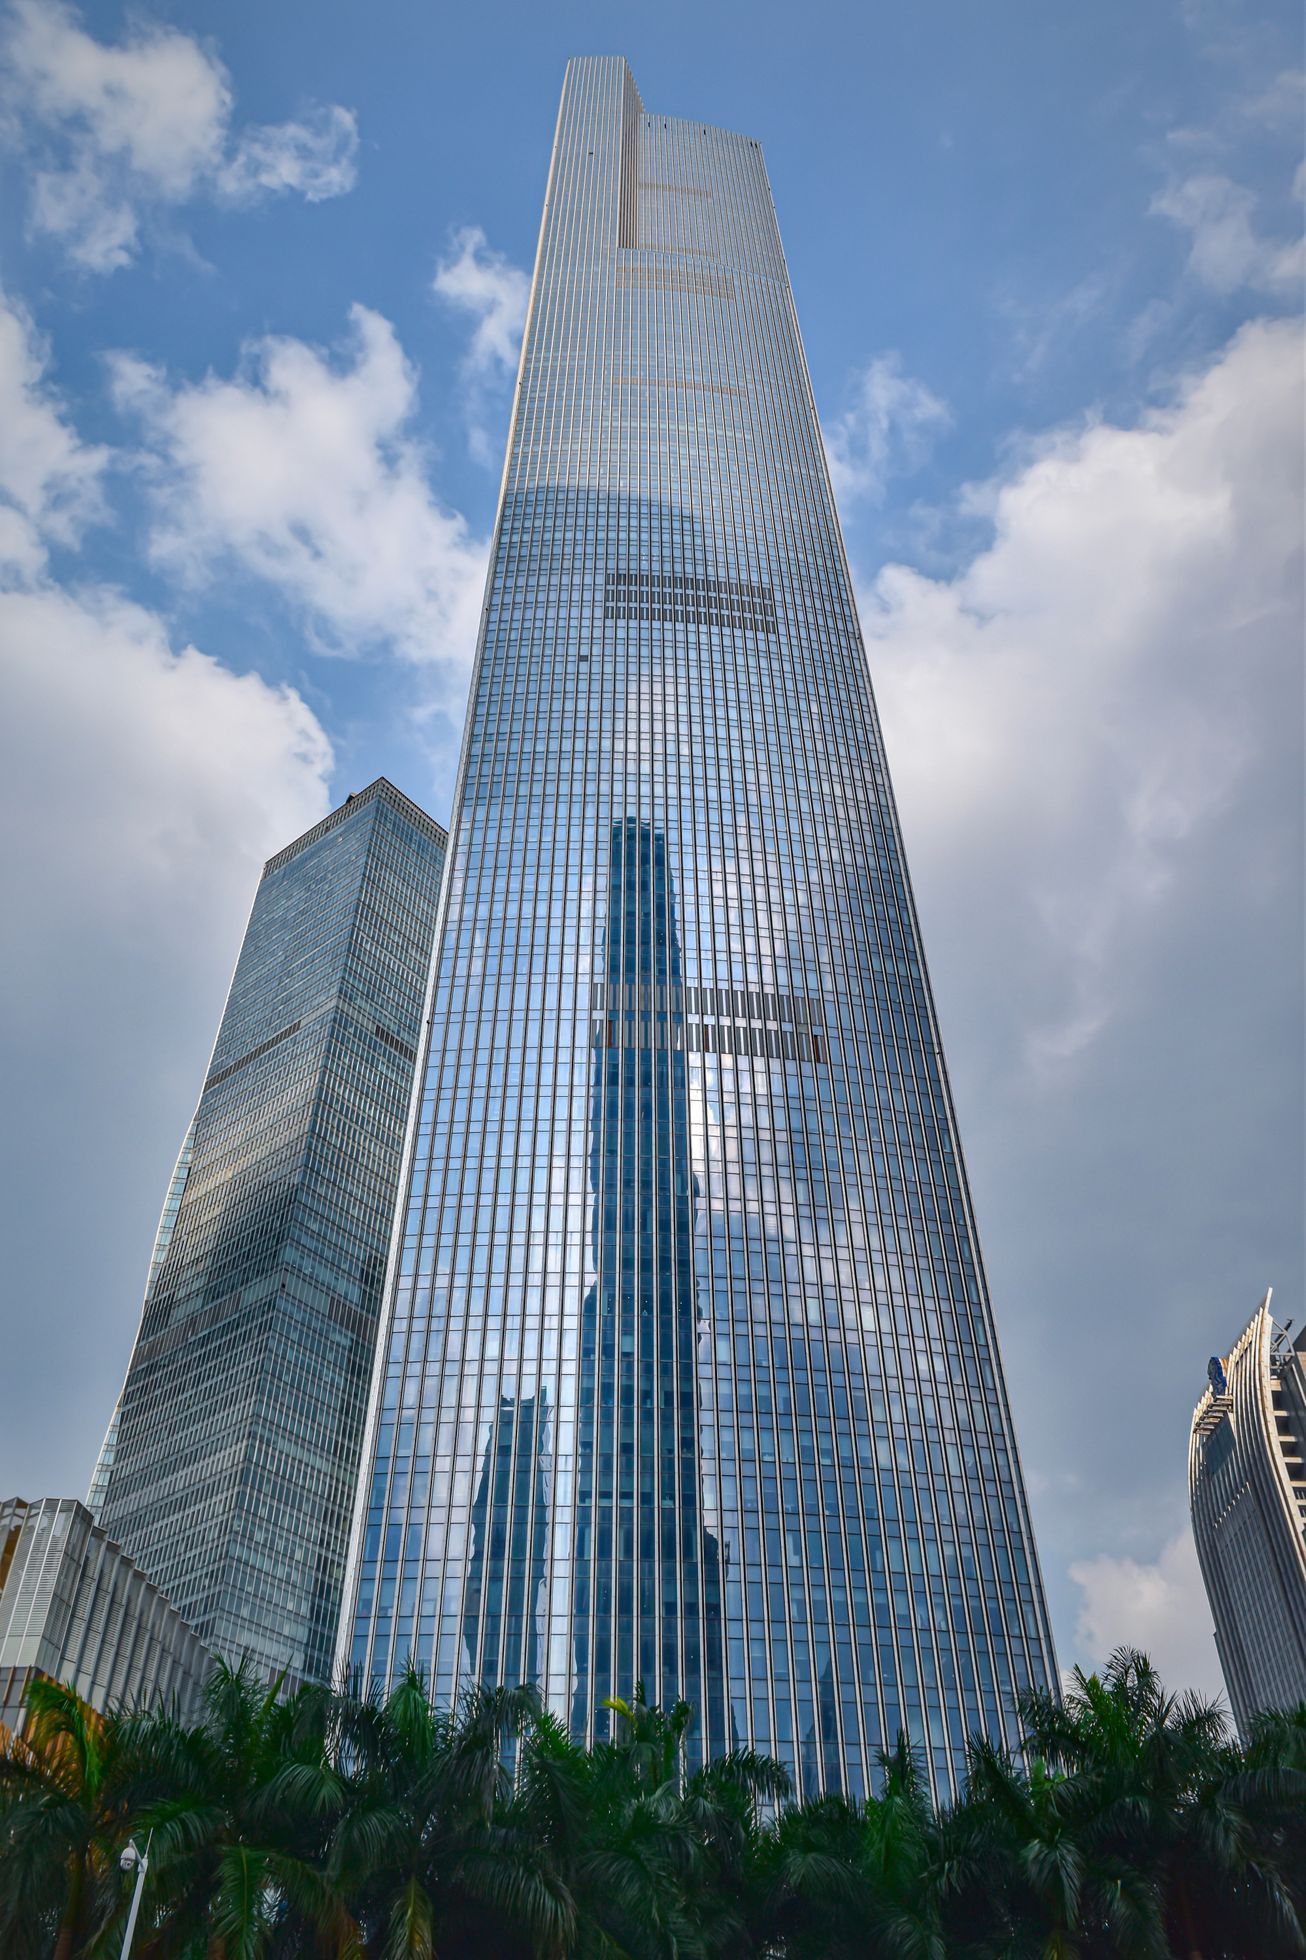 Guangzhou CTF Finance Centre  / Jednorázové užití / Fotogalerie / Podívejte se na fotografie 10 nejvyšších budov světa